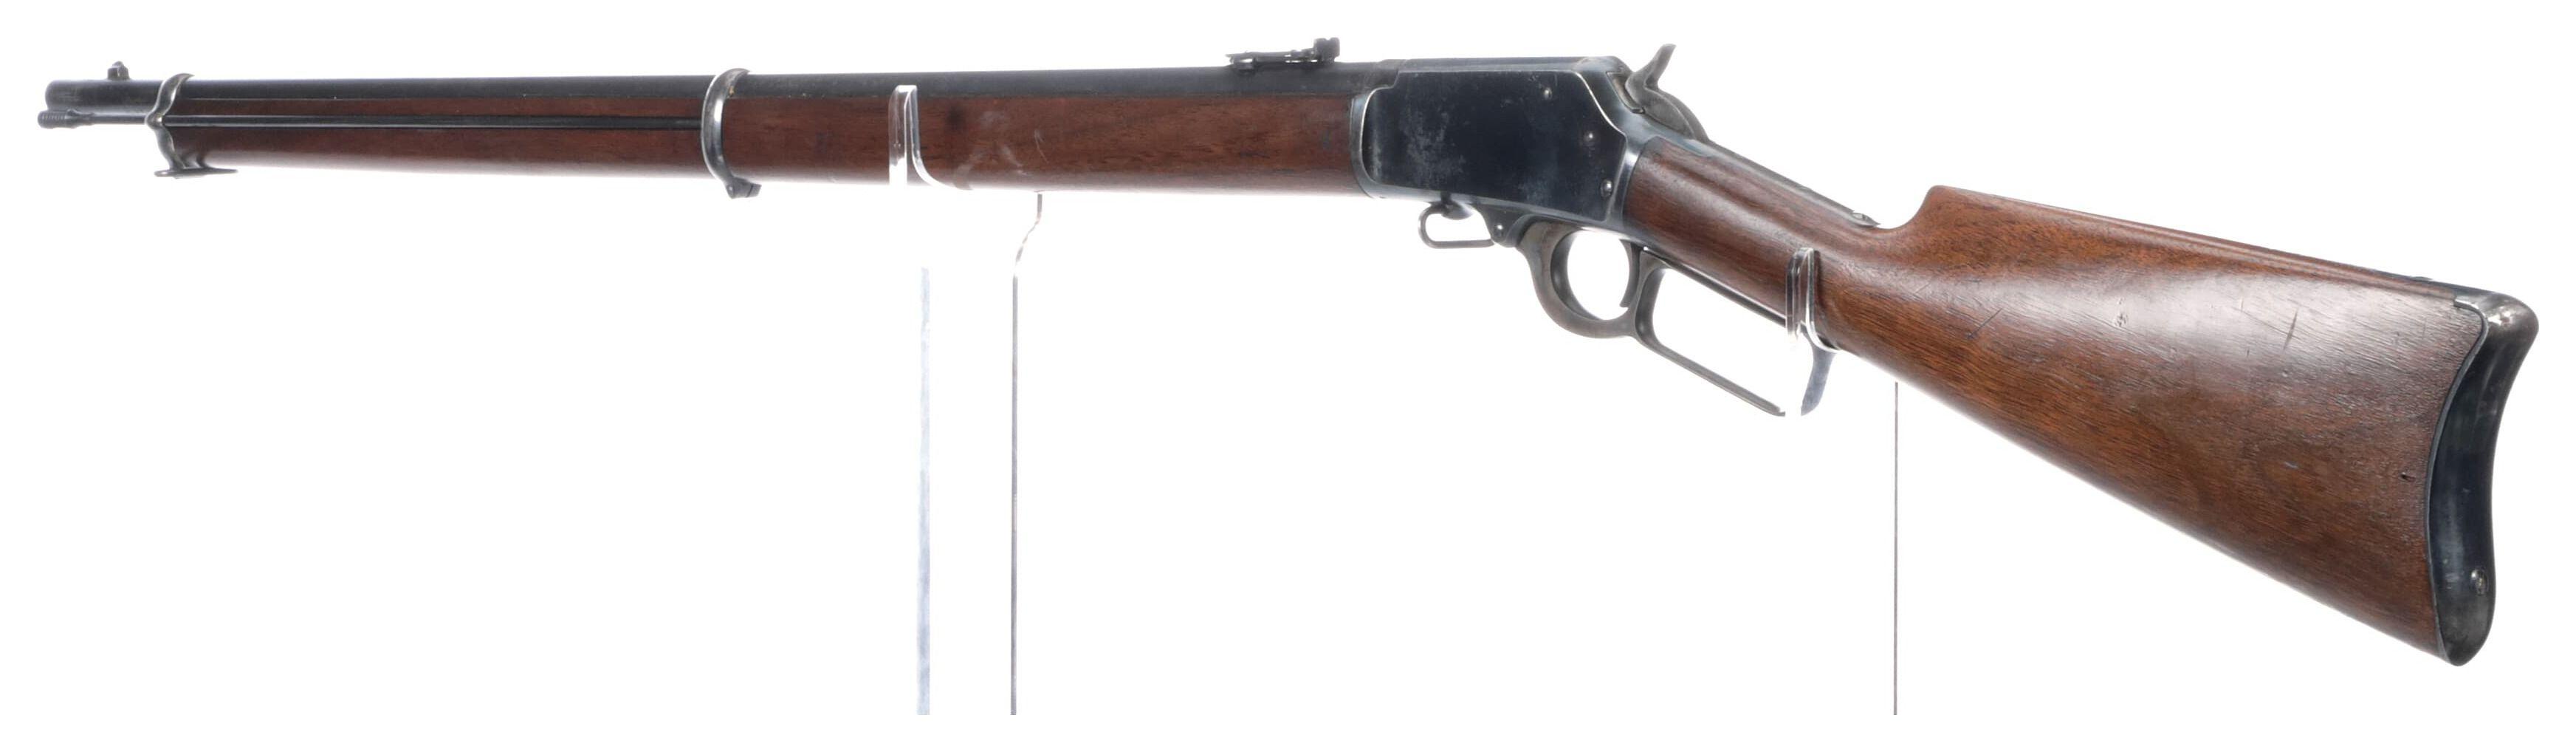 Bureau County Marked Marlin Model 1894 Musket